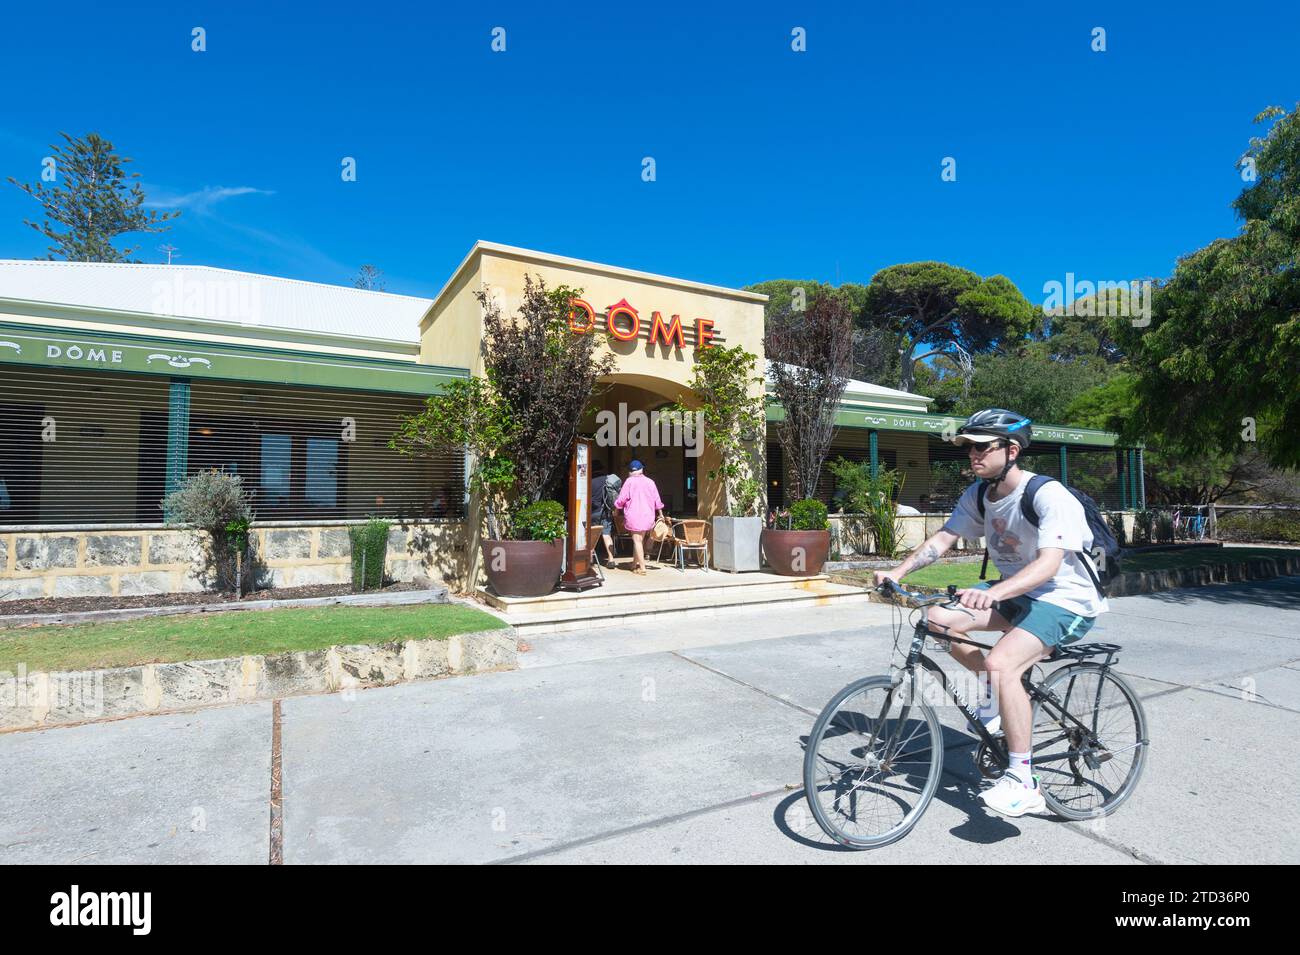 Cycliste devant le restaurant populaire Dôme sur Rottnest Island ou Wadjemup, Australie occidentale, Australie Banque D'Images